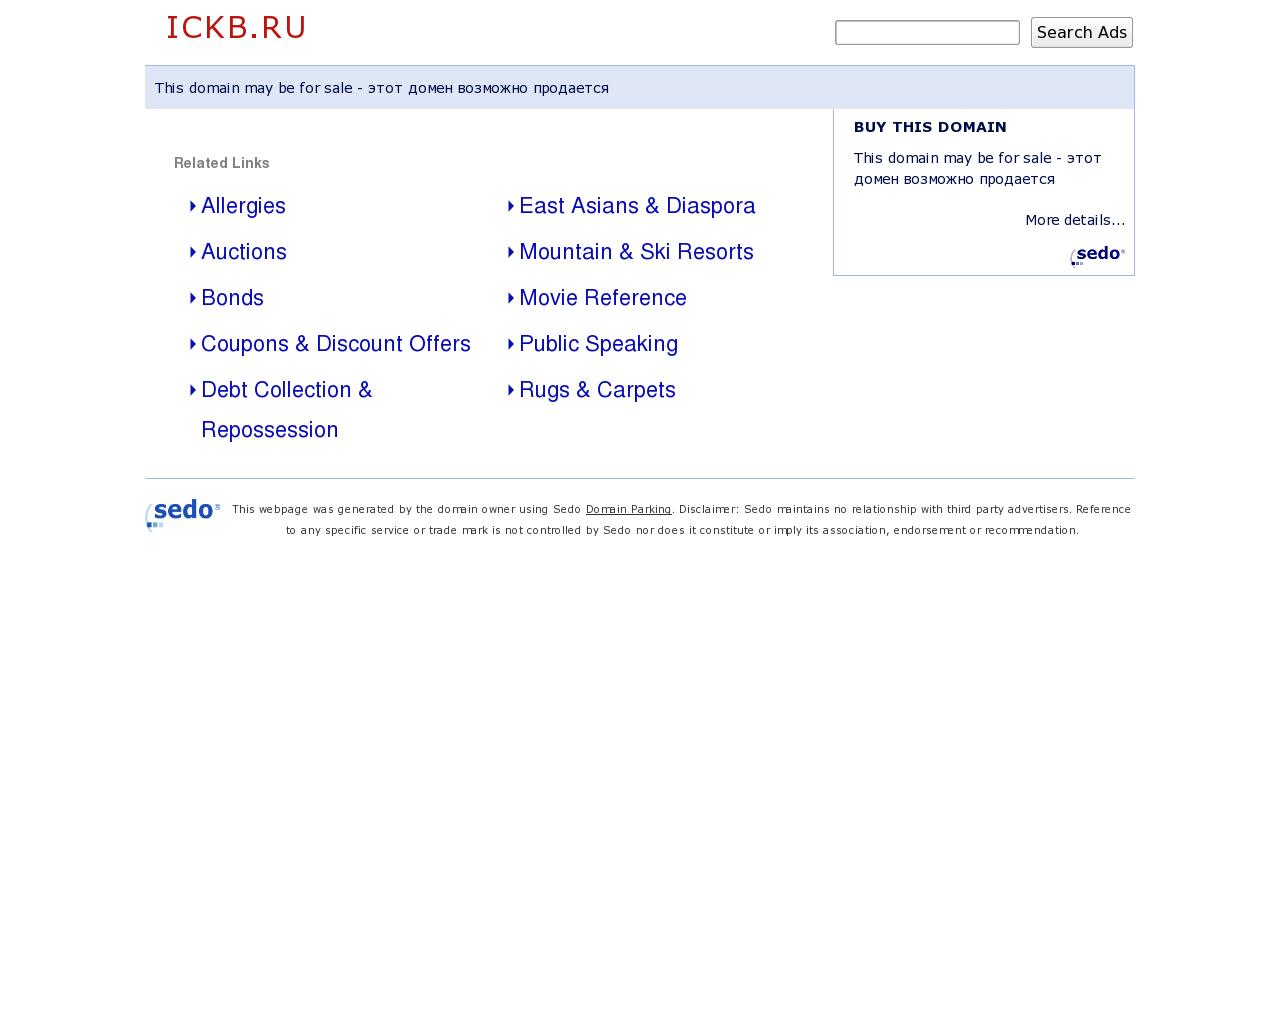 Изображение сайта ickb.ru в разрешении 1280x1024